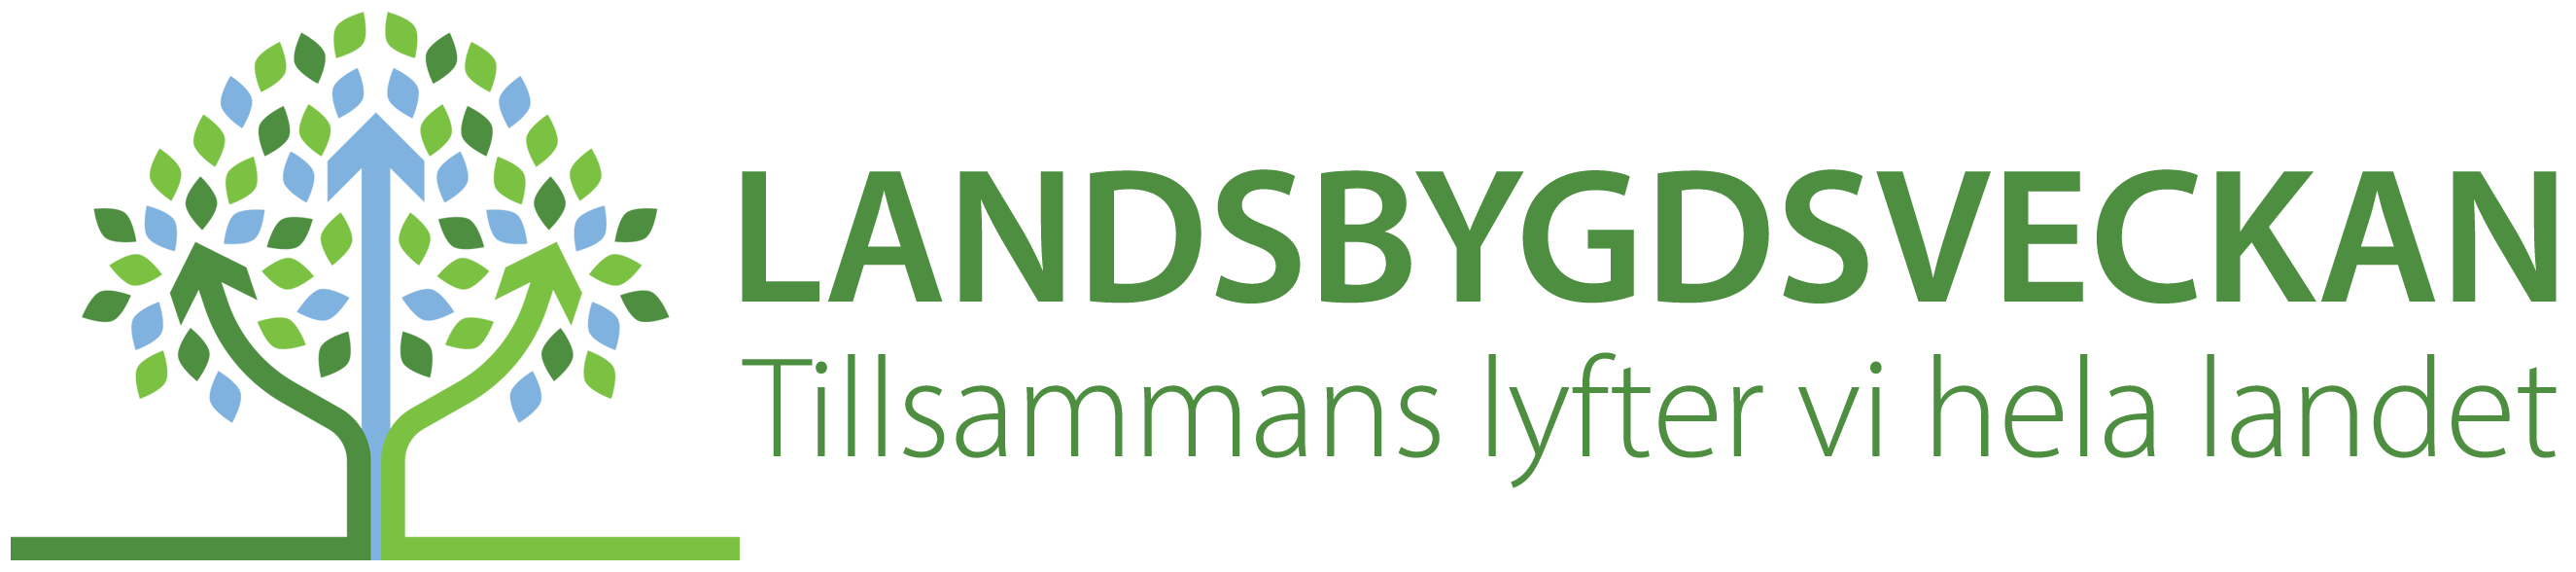 Logotyp för Landsbygdsveckan med text till höger om illustration.